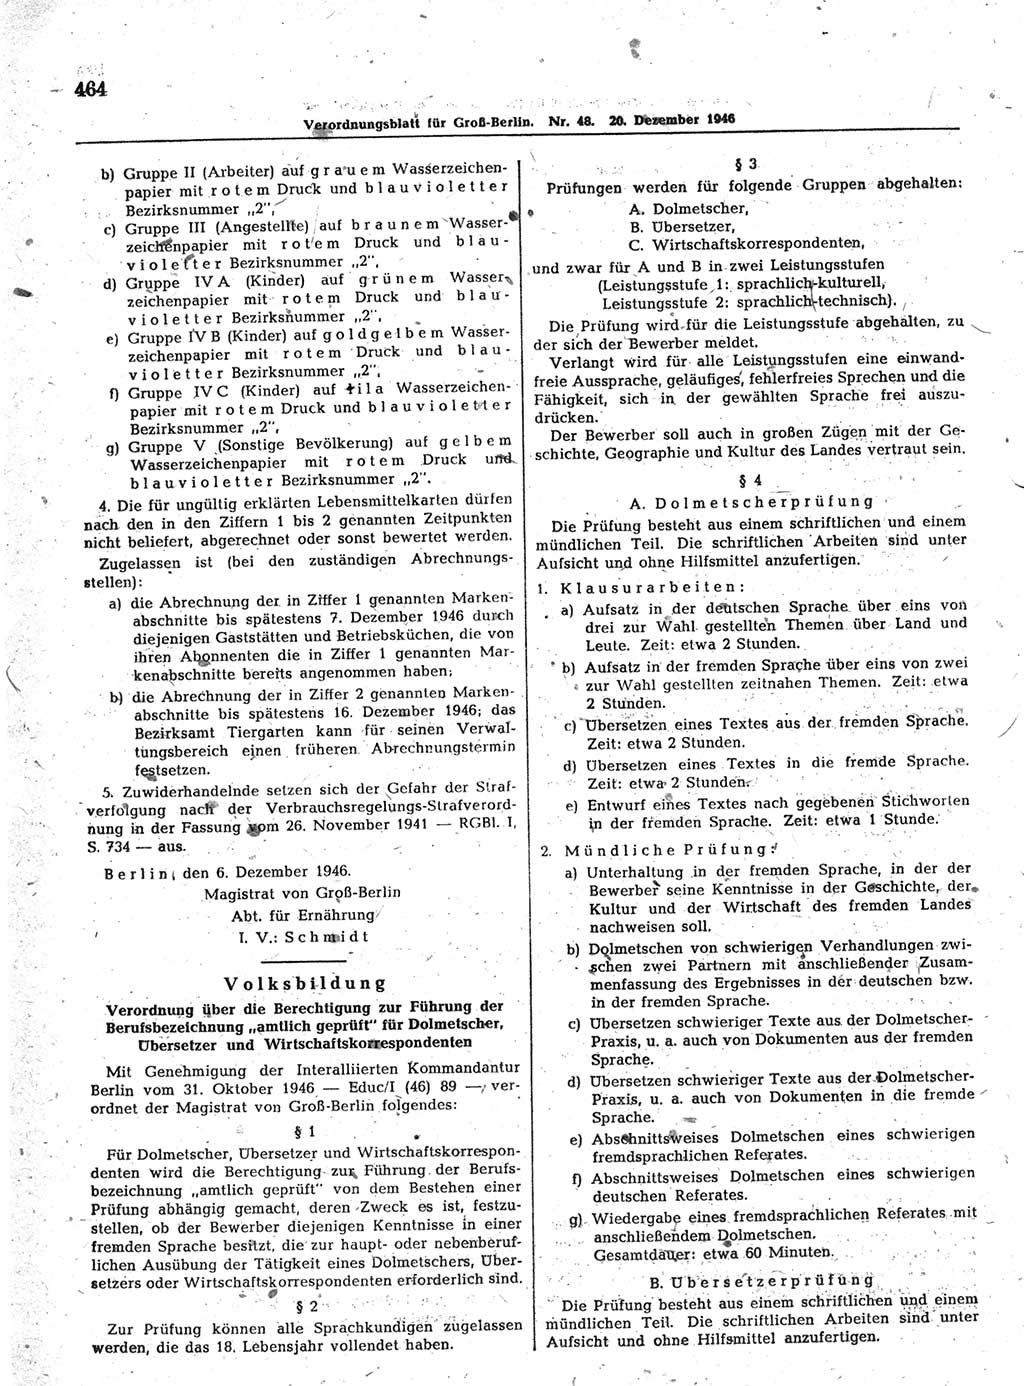 Verordnungsblatt (VOBl.) der Stadt Berlin, für Groß-Berlin 1946, Seite 464 (VOBl. Bln. 1946, S. 464)